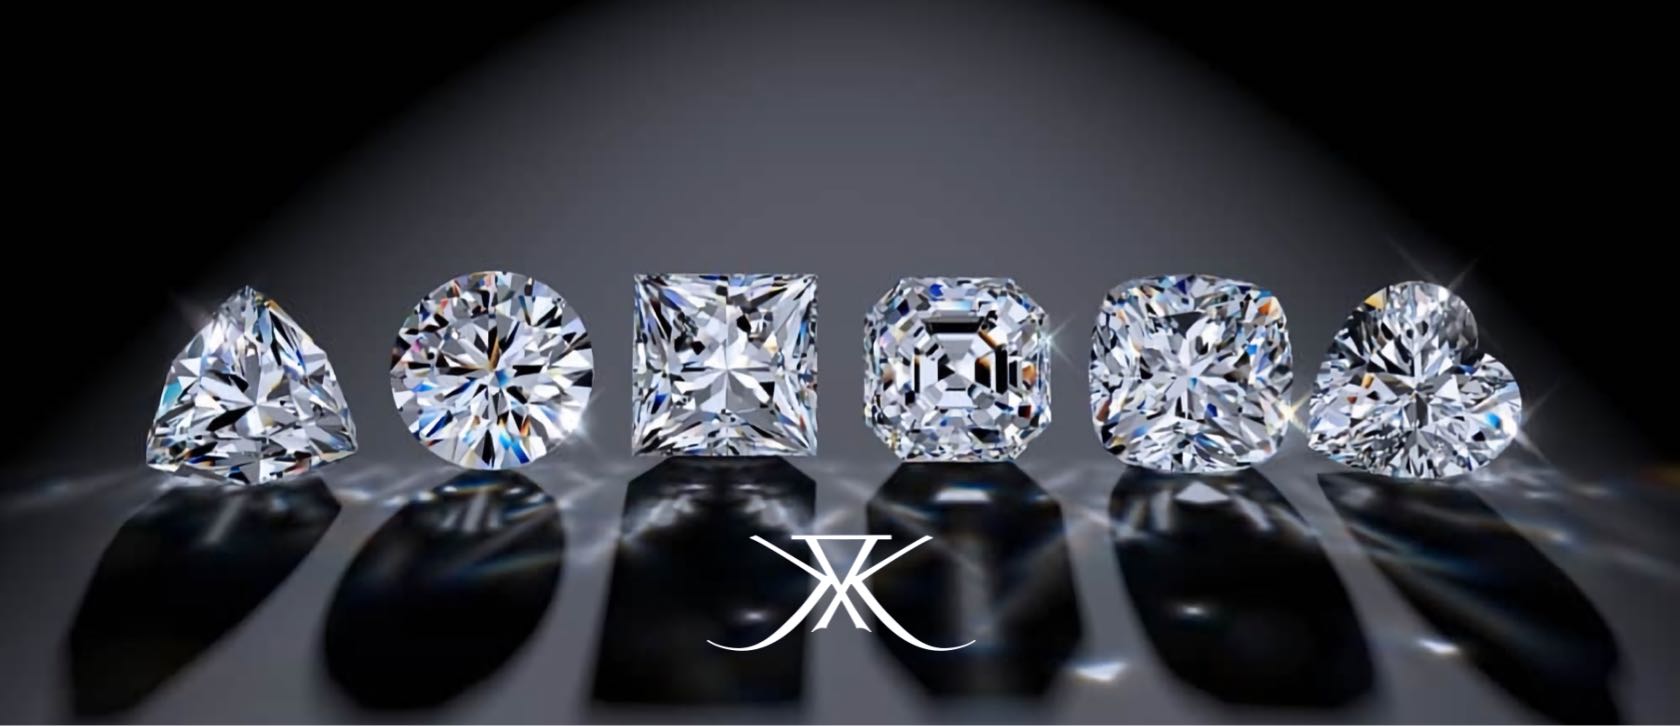 Инвестирование в драгоценности first class diamonds. Бриллианты настоящие. Искусственные Алмазы.